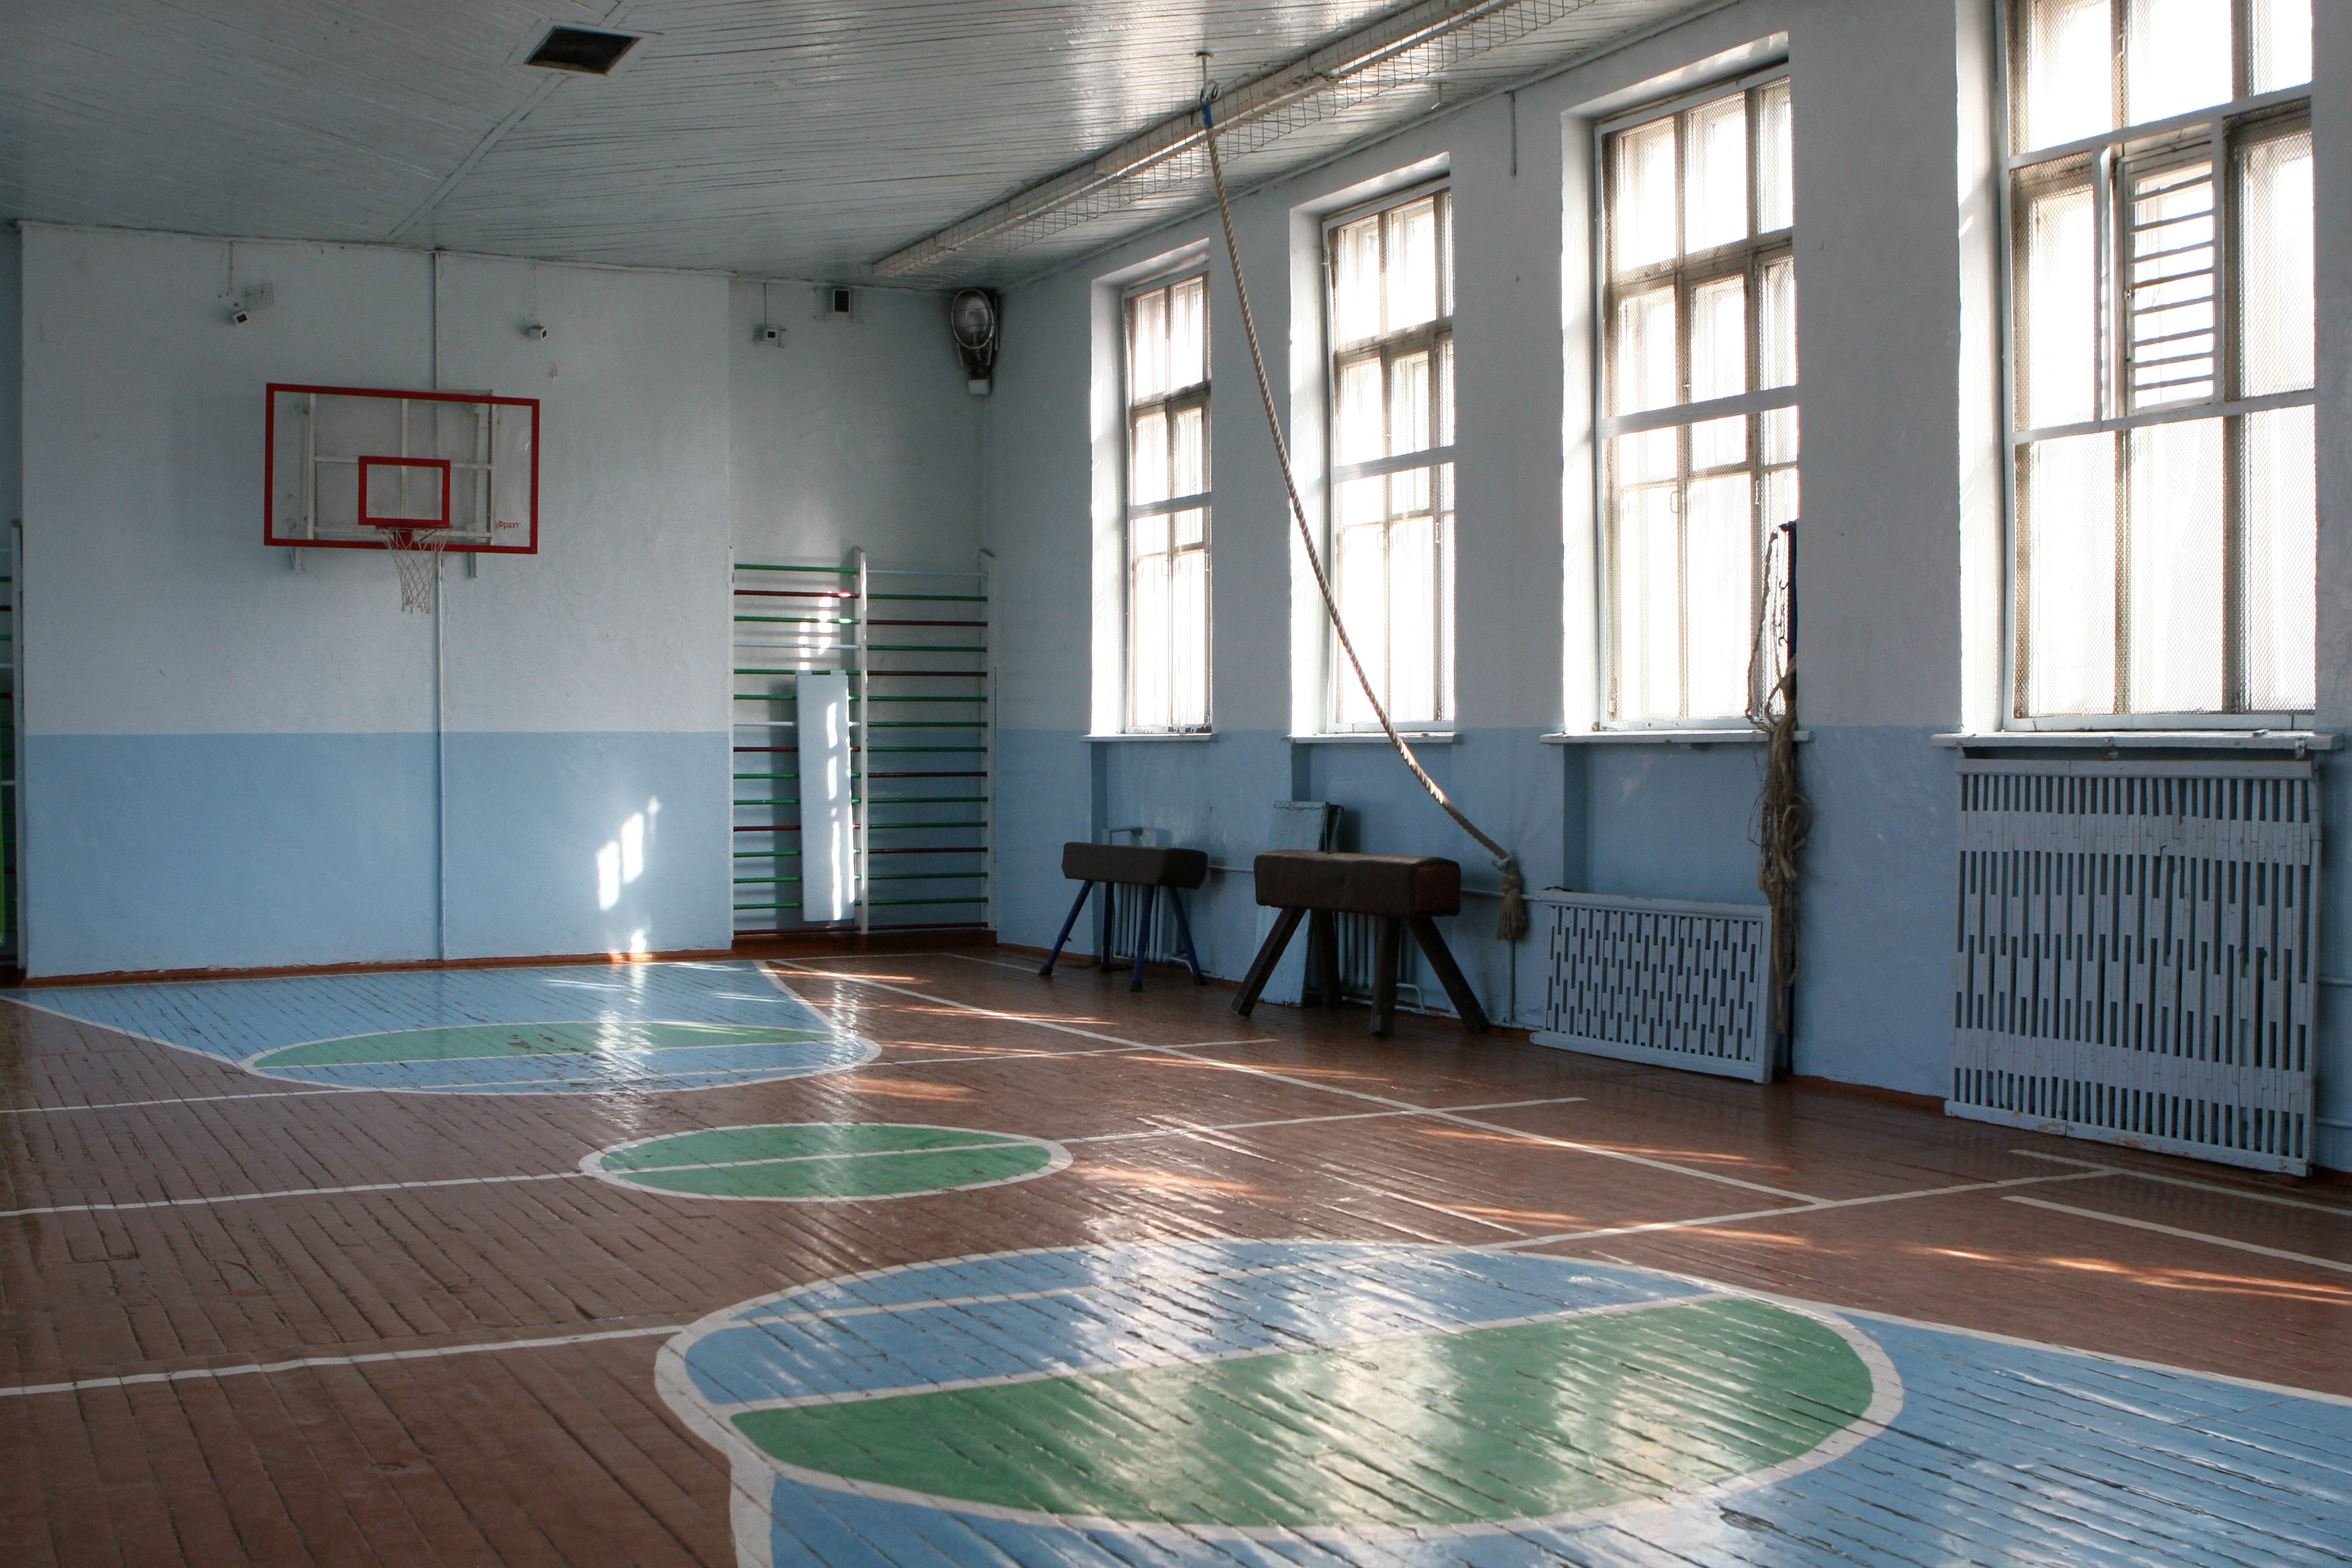 Стар спортивная школа. Спортзал школа 183 Новосибирск. Спортзал в школе. Спортивный зал в школе. Зал физкультуры.